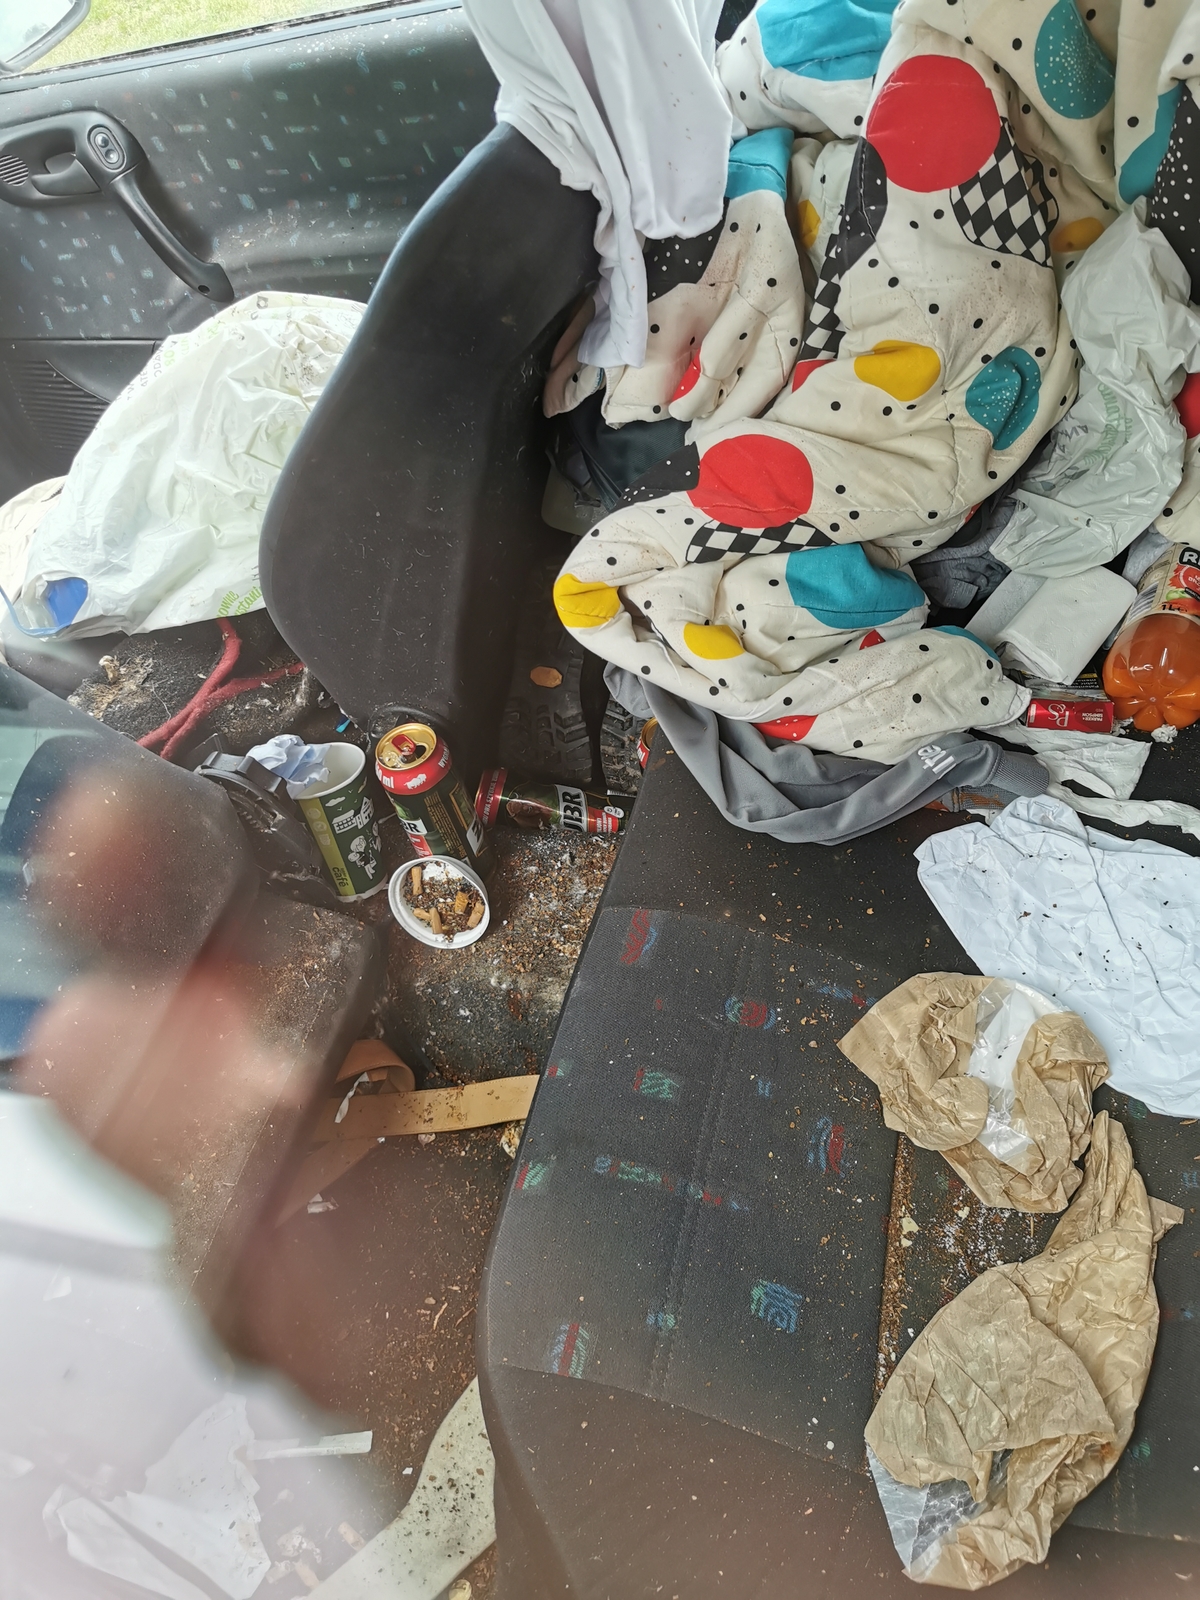 Samochody, w których mieszkają bezdomni, są często pełne śmieci.